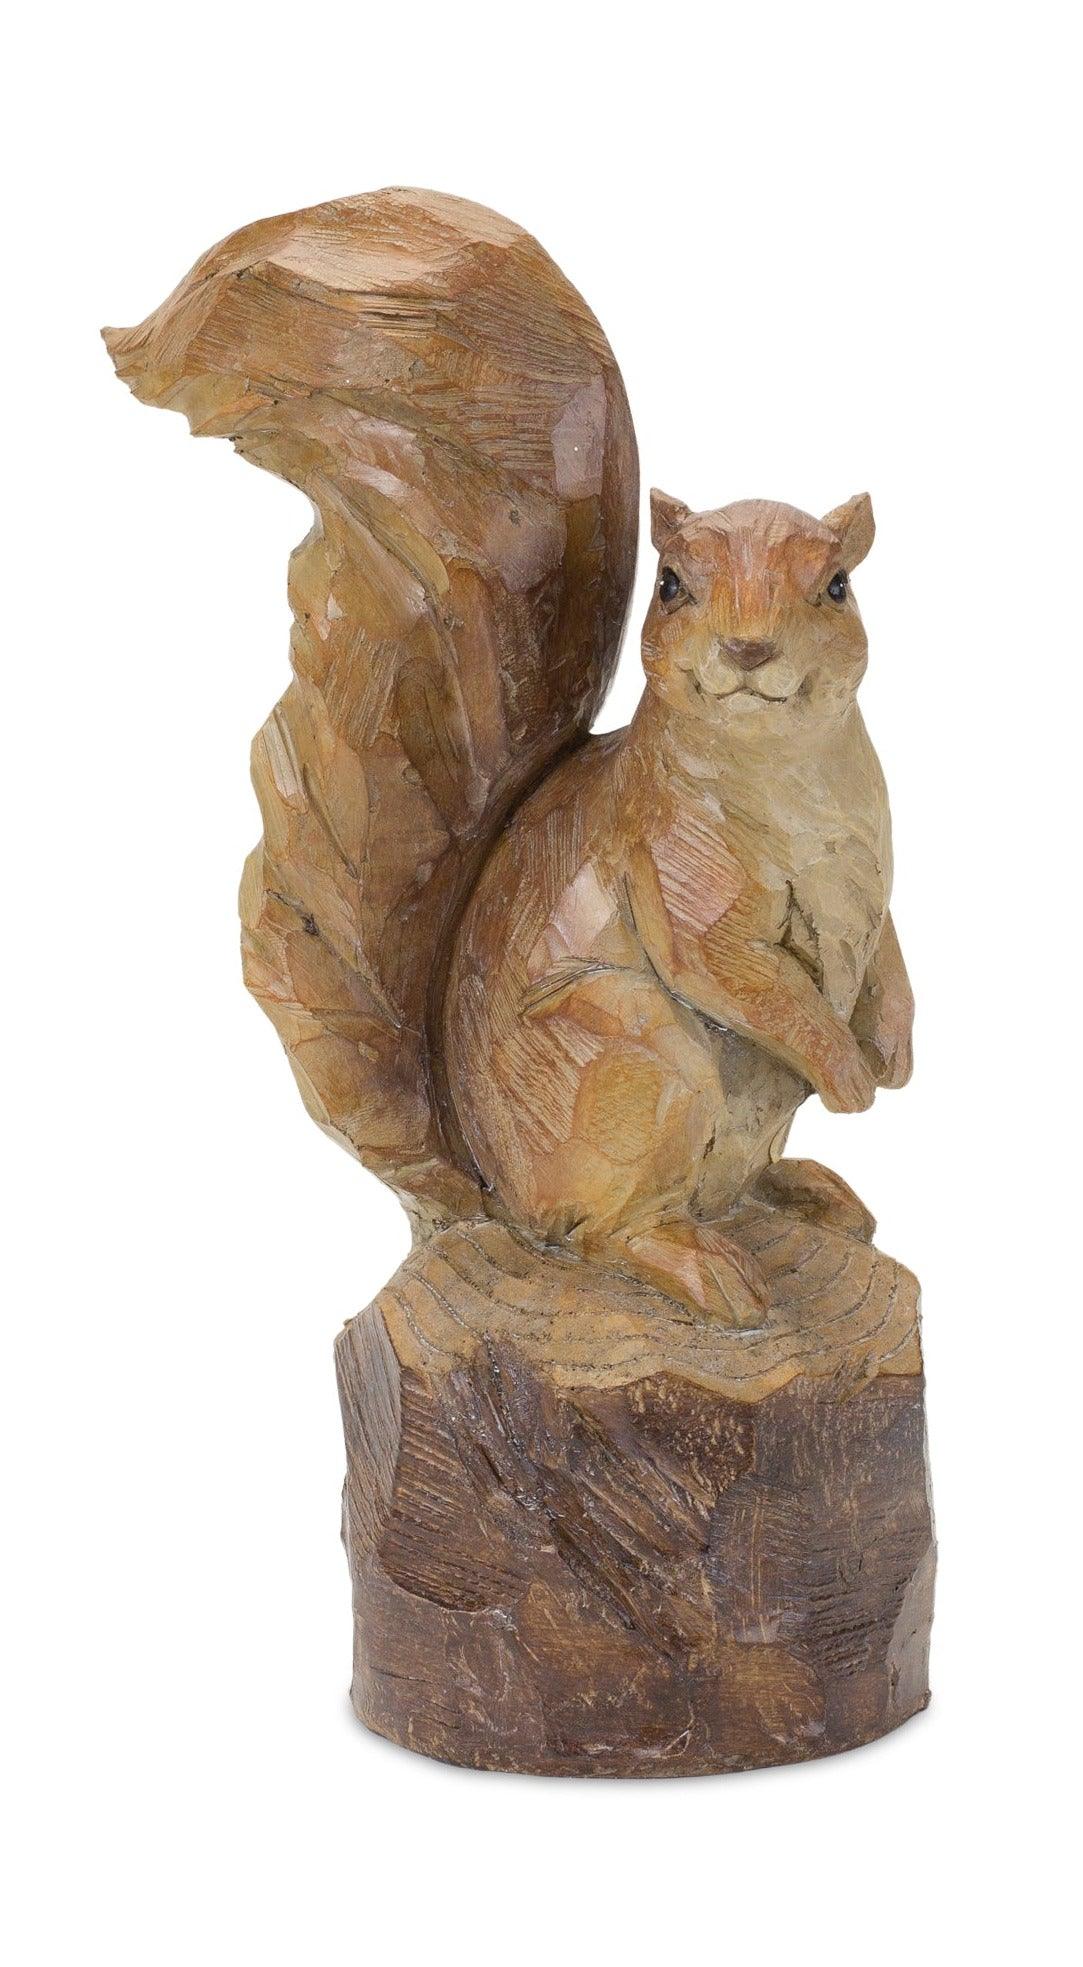 Resin Squirrels - Signastyle Boutique